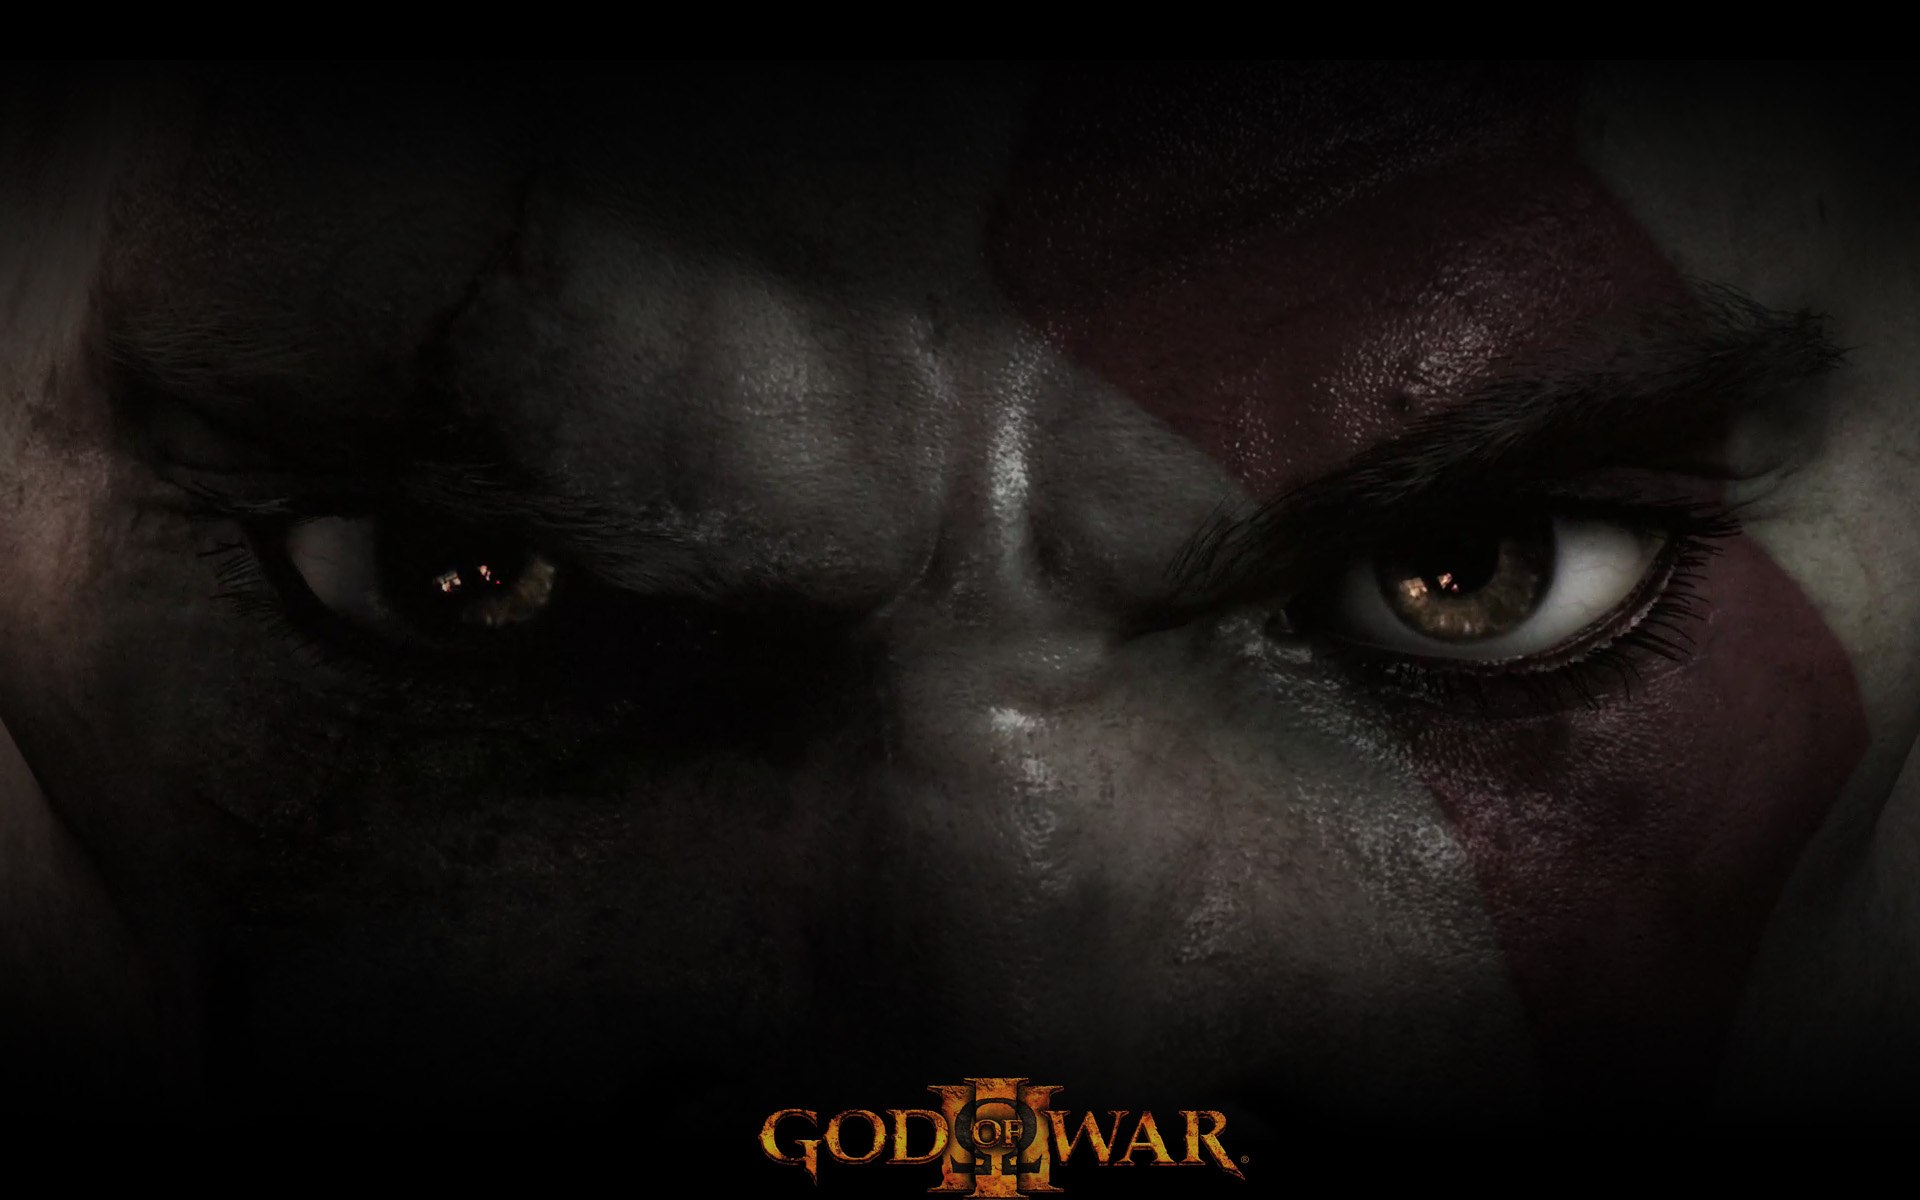 god of war iii, kratos (god of war), god of war, video game